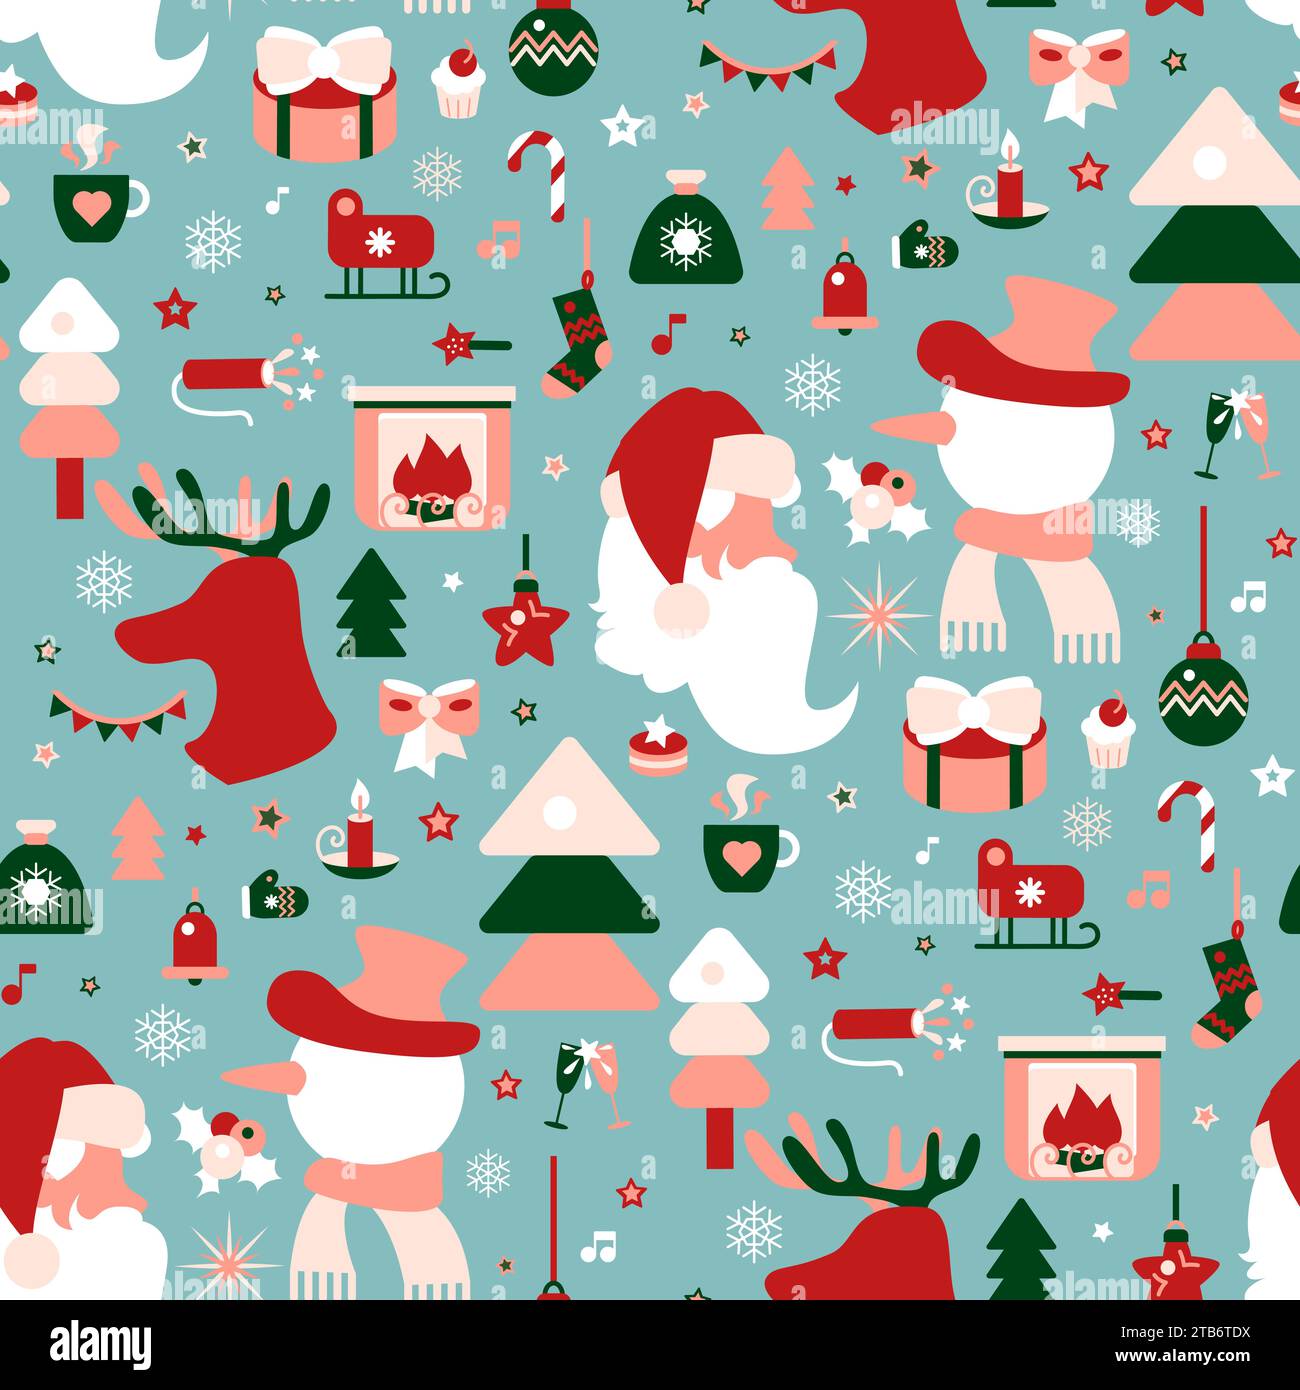 Nahtloses Weihnachtsmuster in roten weißen Farben mit Weihnachtsbaumspielzeug, Weihnachtsmann, Schneemann, Hirsch, Geschenke, Überraschungen. Verziert zum Bedrucken auf Stoff, Verpackung Stock Vektor